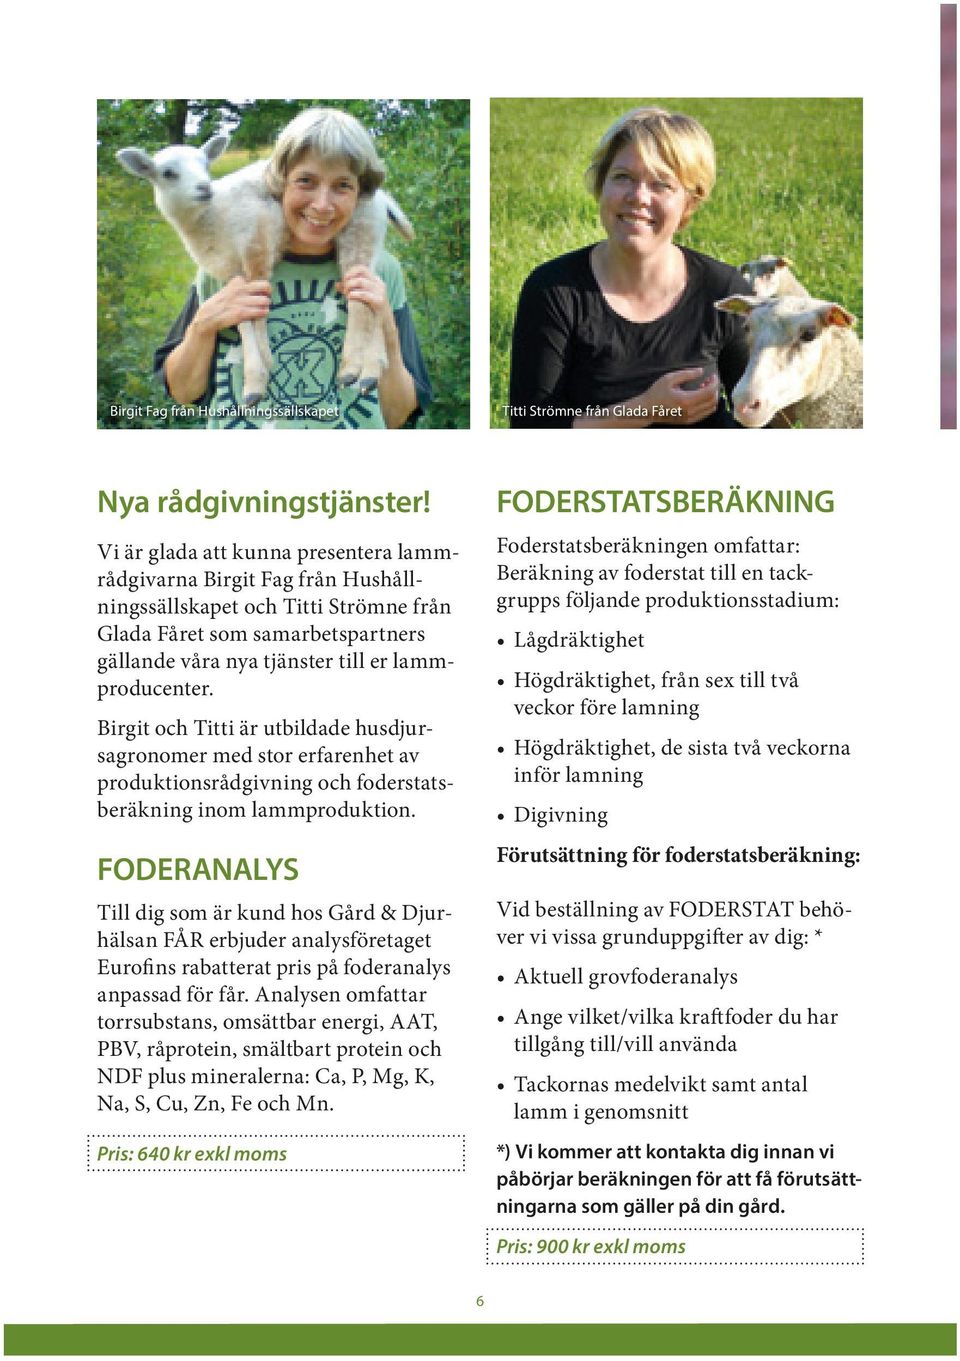 Birgit och Titti är utbildade husdjursagronomer med stor erfarenhet av produktionsrådgivning och foderstatsberäkning inom lammproduktion.